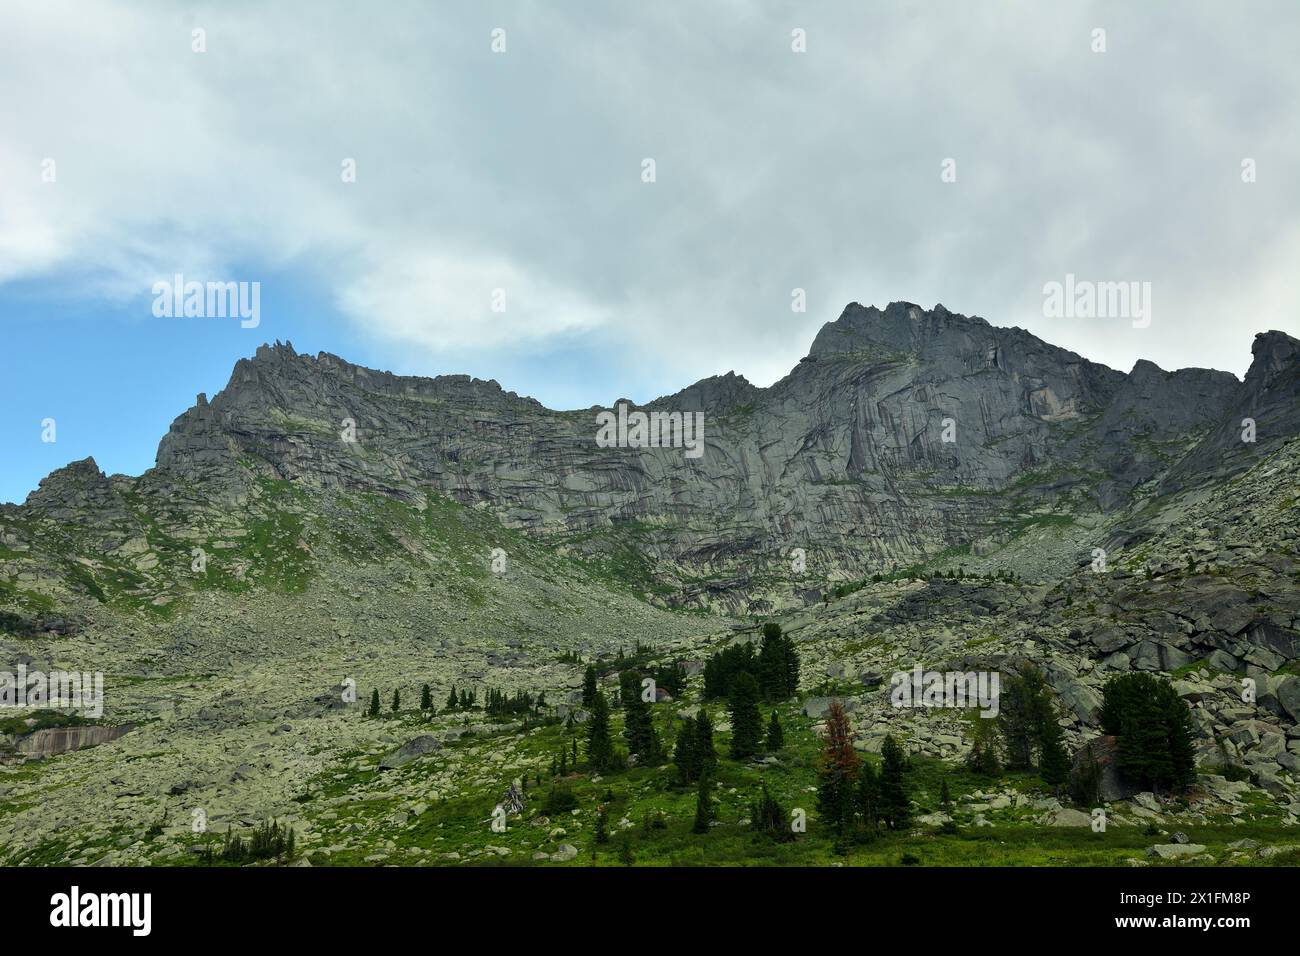 La cresta di un'alta roccia a picco in una catena montuosa con cedri rari sul pendio sotto un cielo nuvoloso estivo. Parco naturale di Ergaki, territorio di Krasnoyarsk Foto Stock